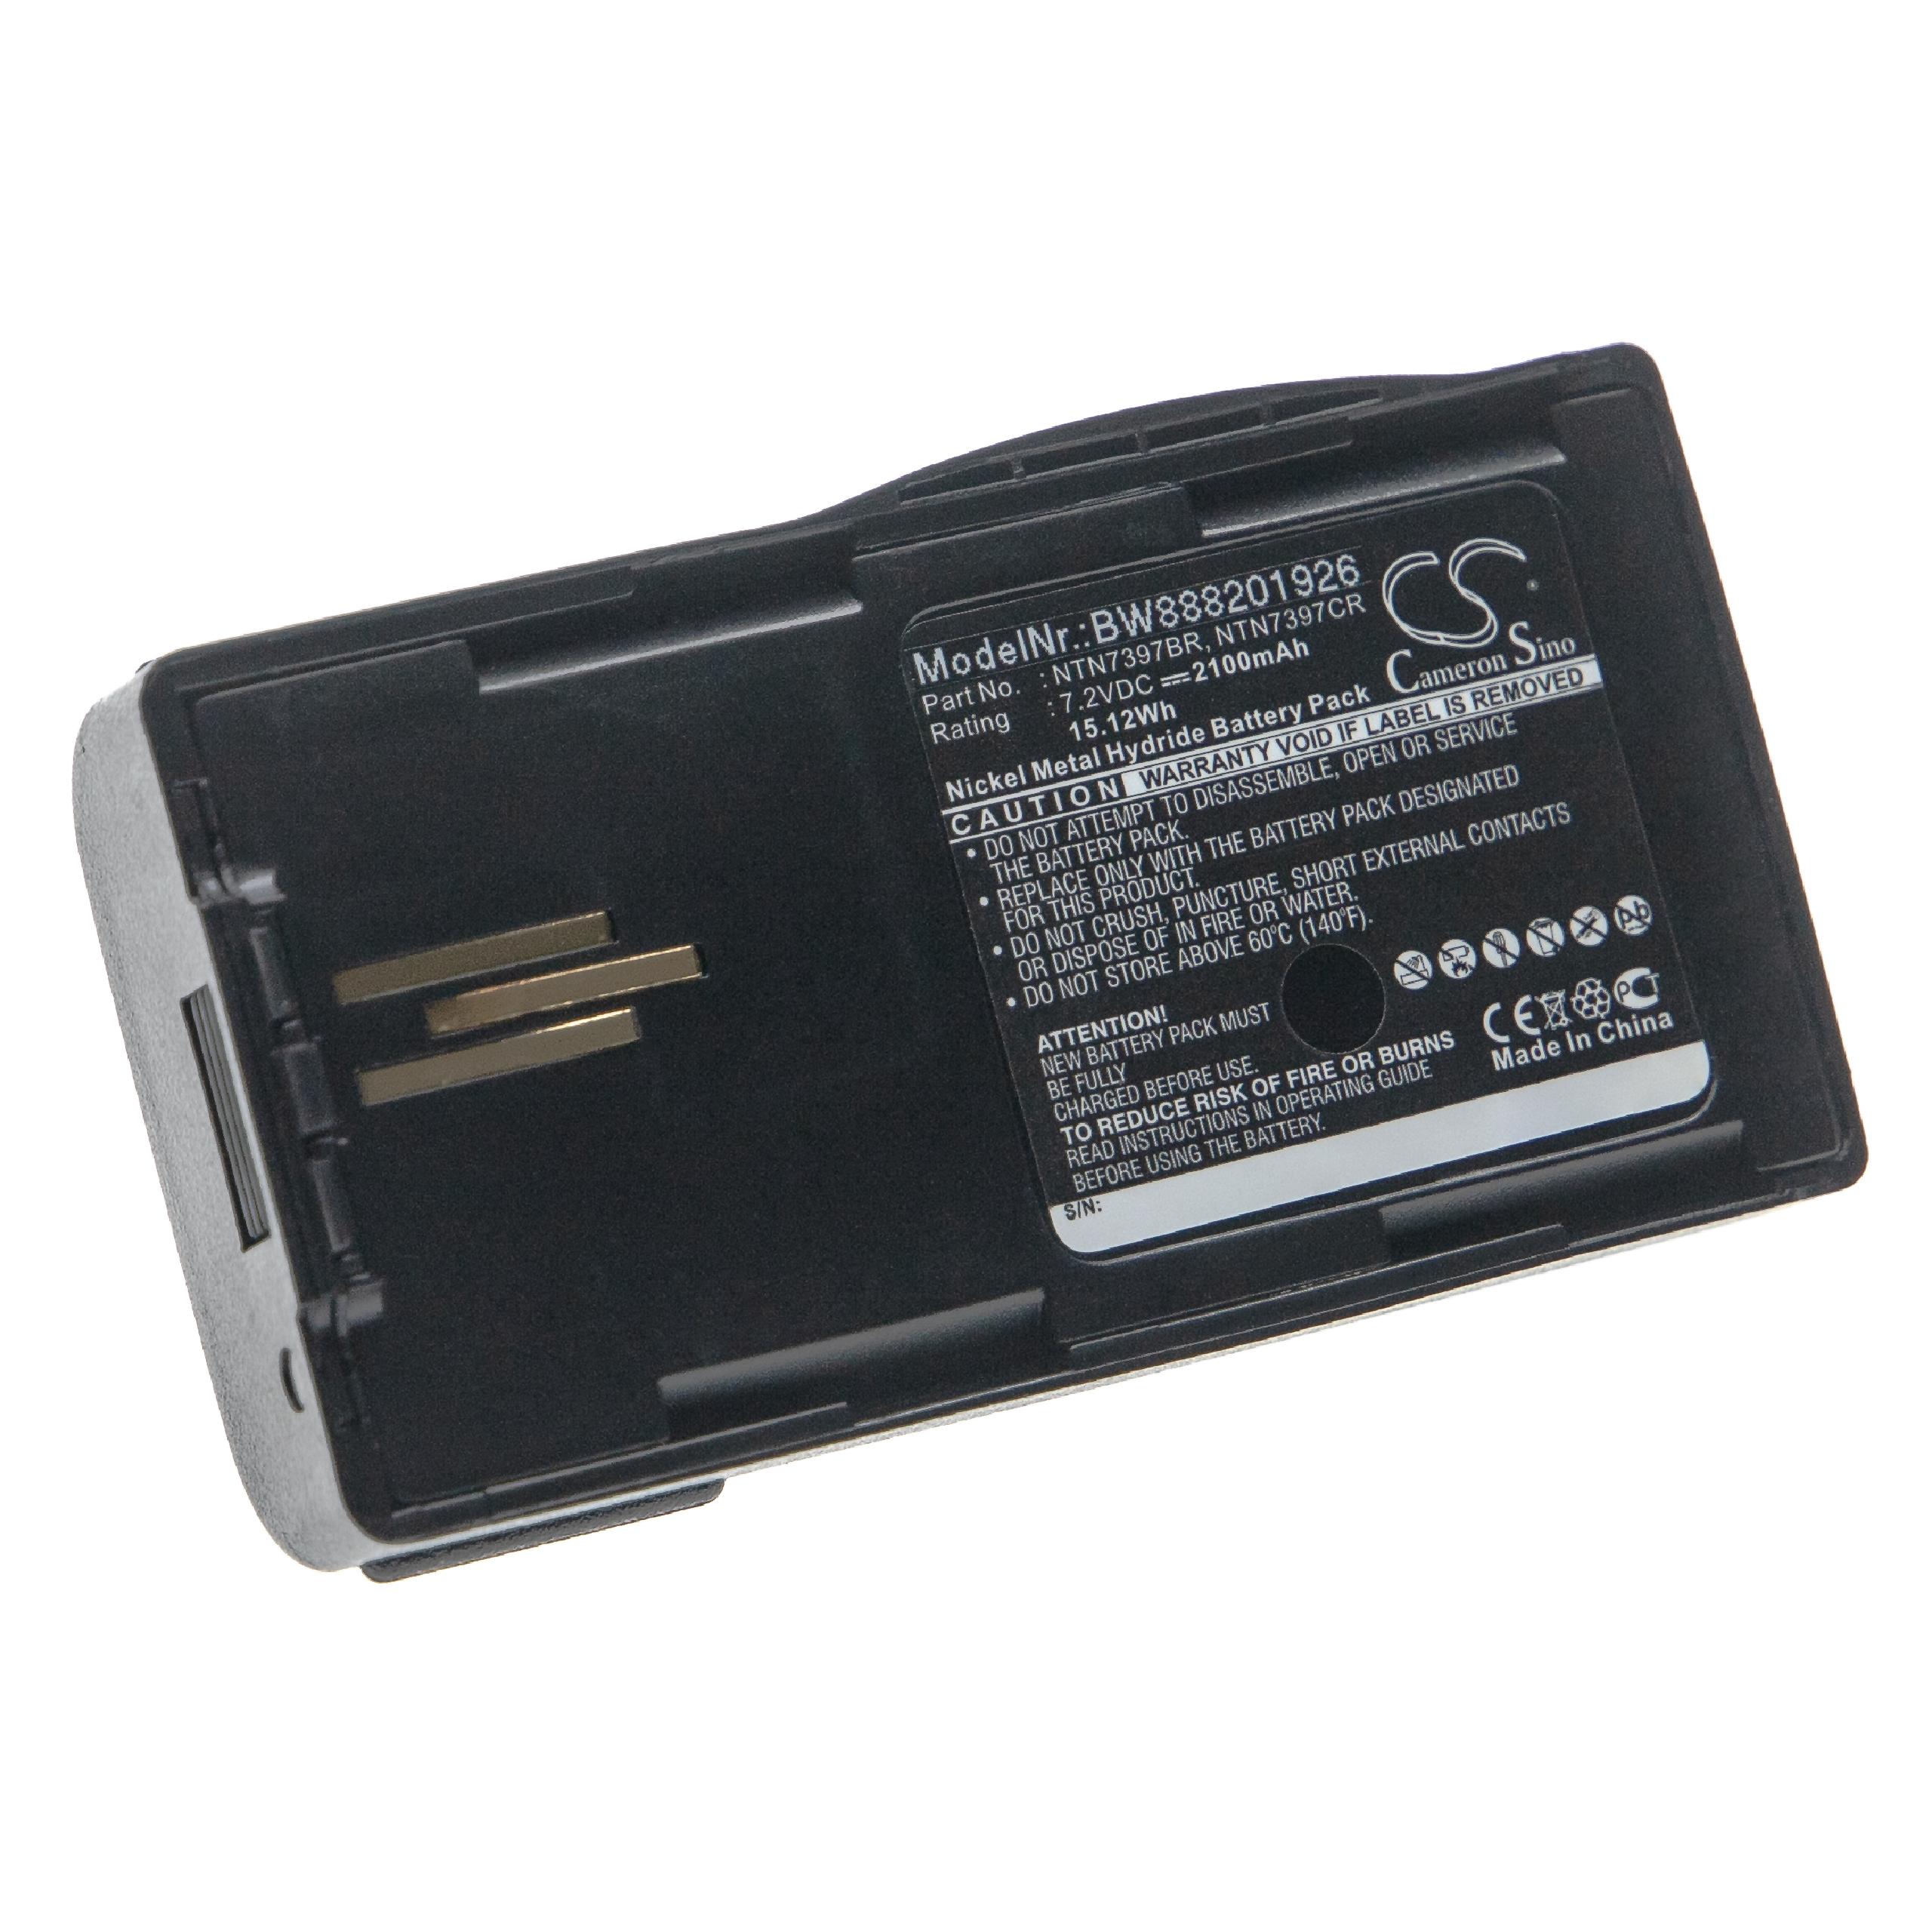 Batería reemplaza Motorola NTN7394, NTN7394A para radio, walkie-talkie Motorola - 2100 mAh 7,2 V NiMH